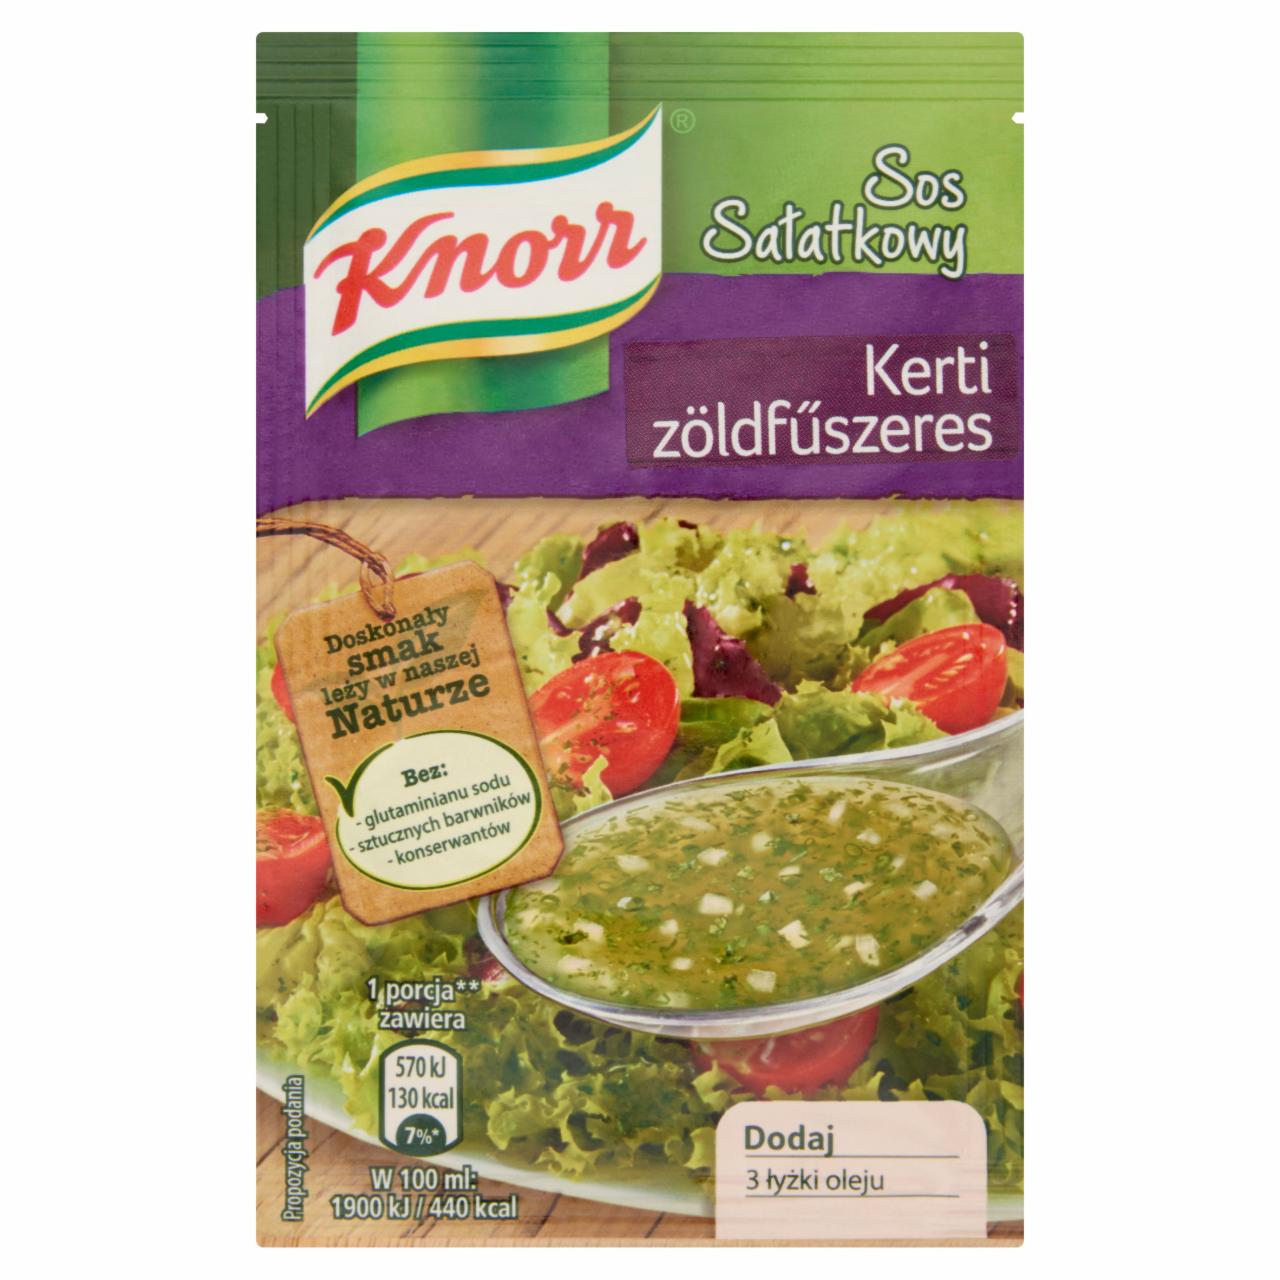 Képek - Knorr kerti zöldfűszeres salátaöntet por 9 g